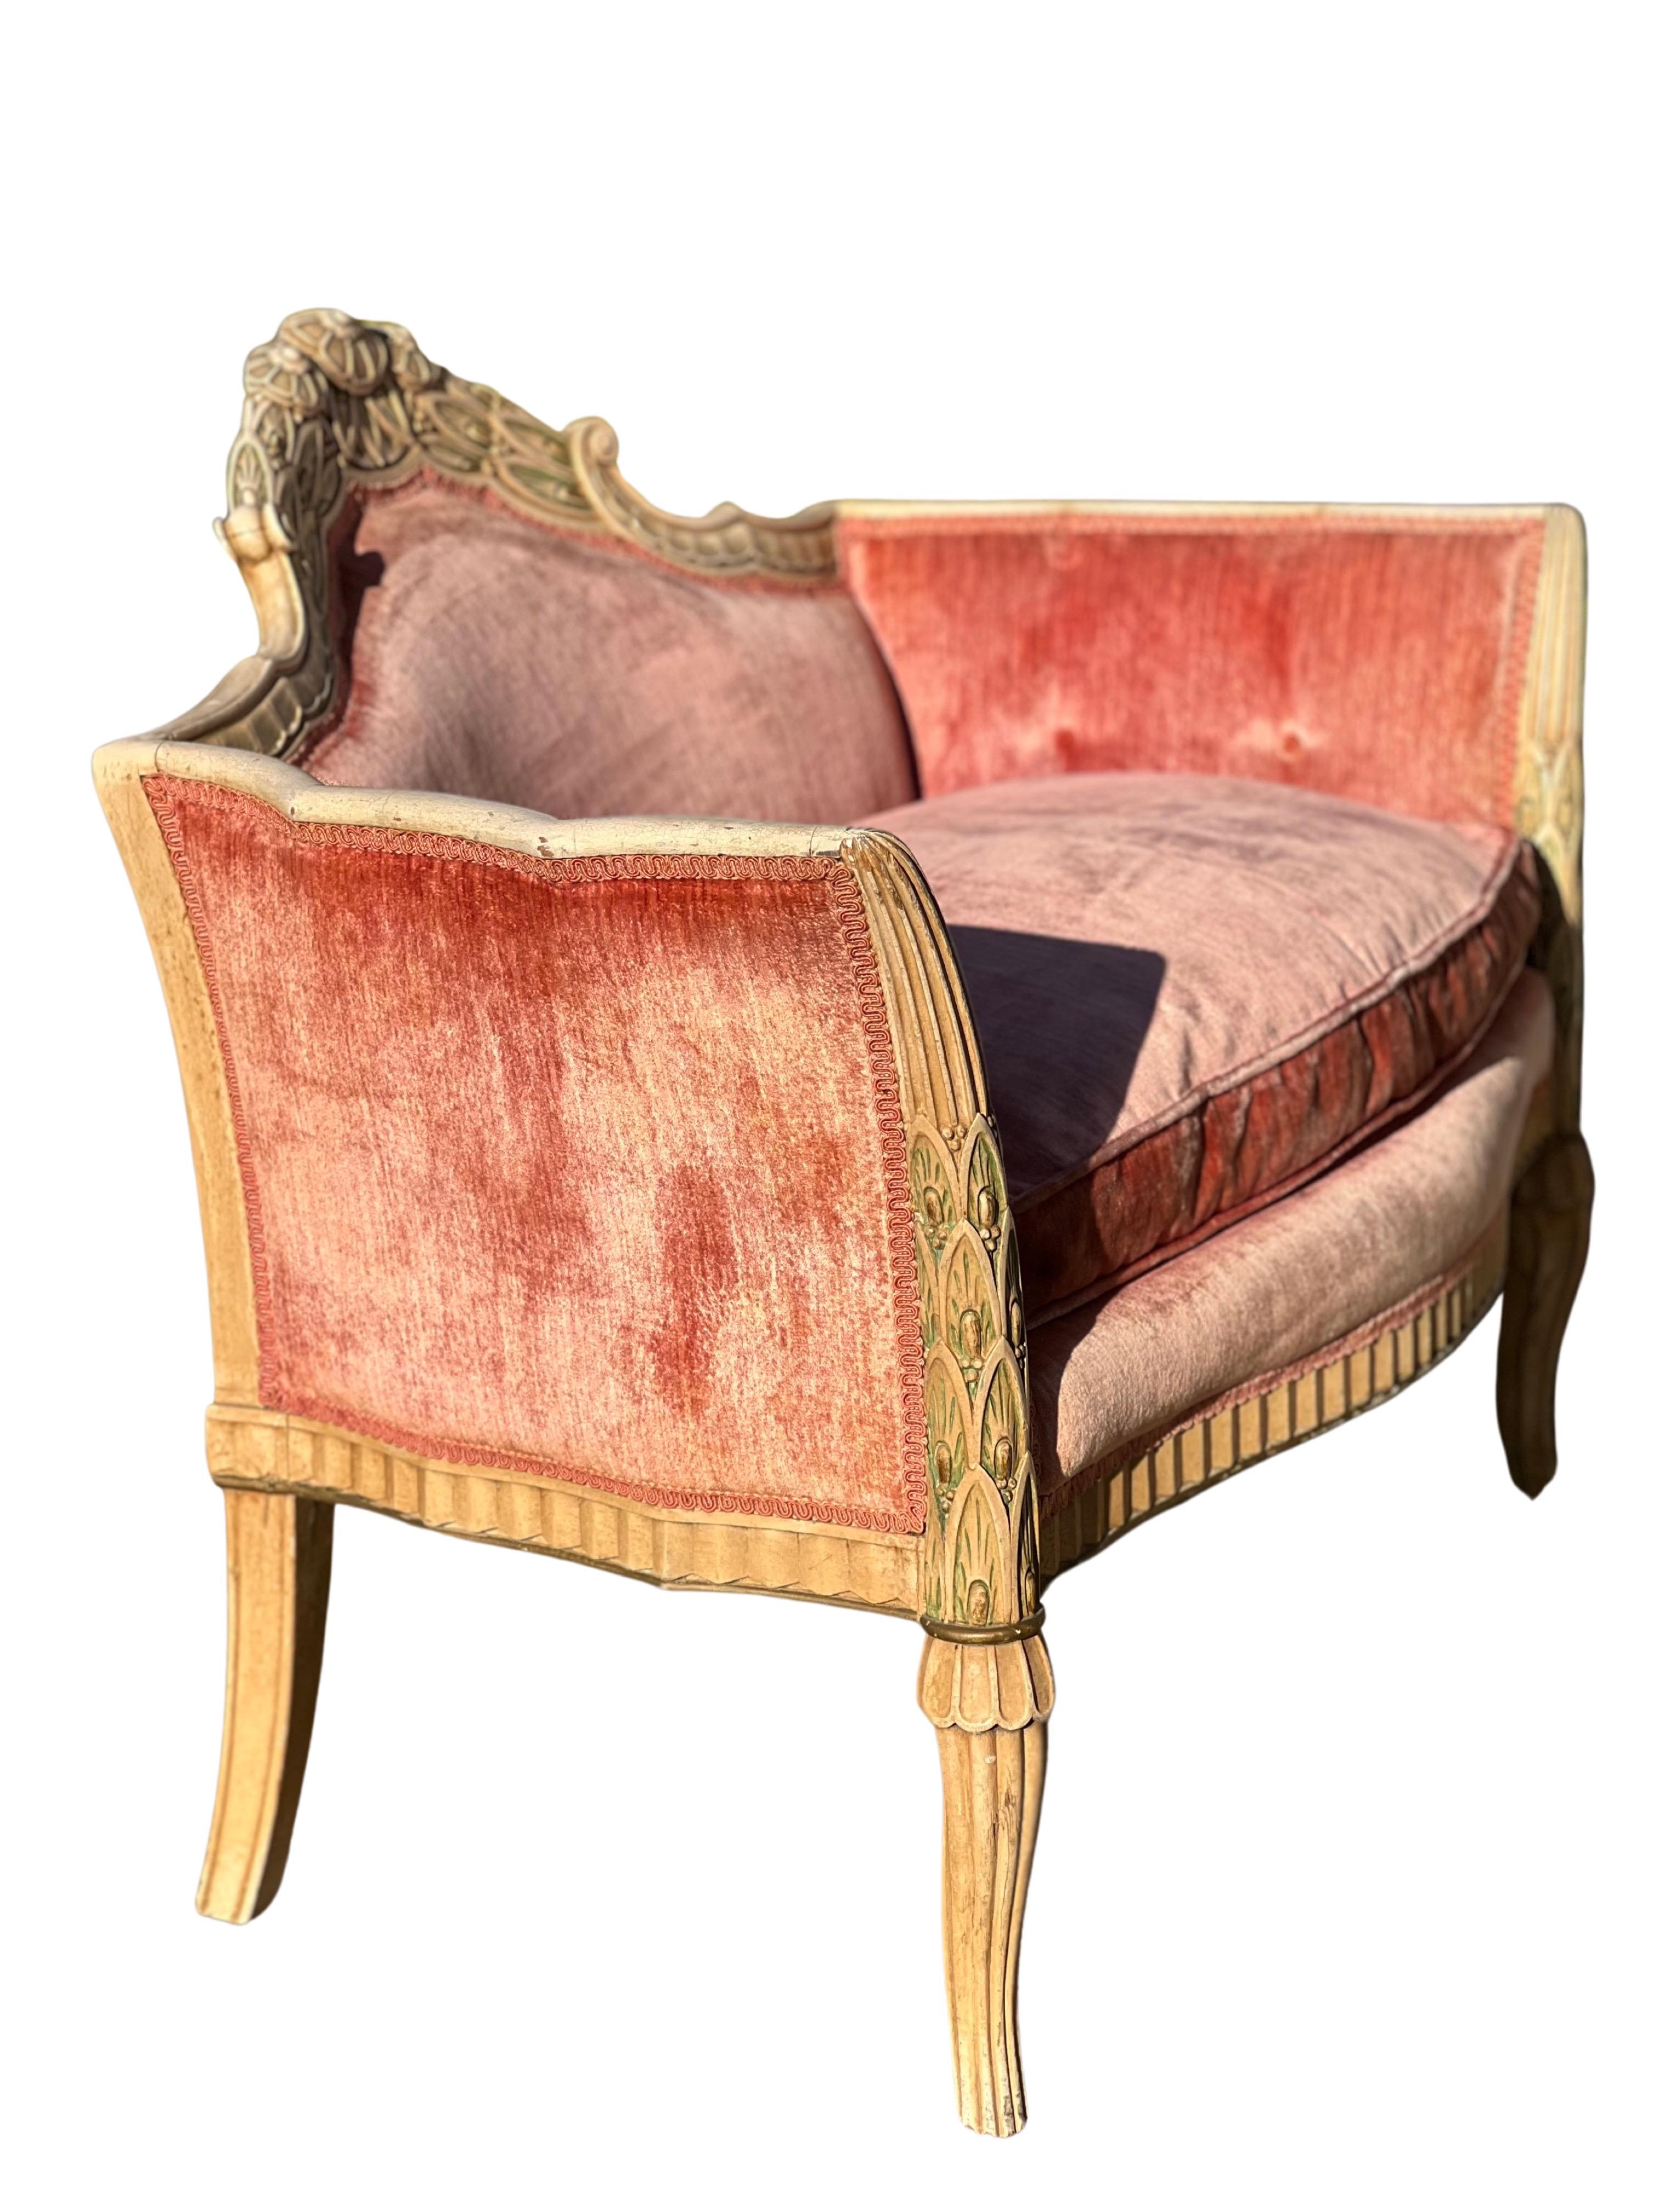 Wunderschönes französisches Sofa im Louis-XVI-Stil aus dem 19. Jahrhundert.

Inspiriert von den französischen Formen des Barocks, ist das Sofa mit wunderschön geschnitzten Holzdetails durchzogen. Die geschnitzten Blatt- und Blumendetails auf dem